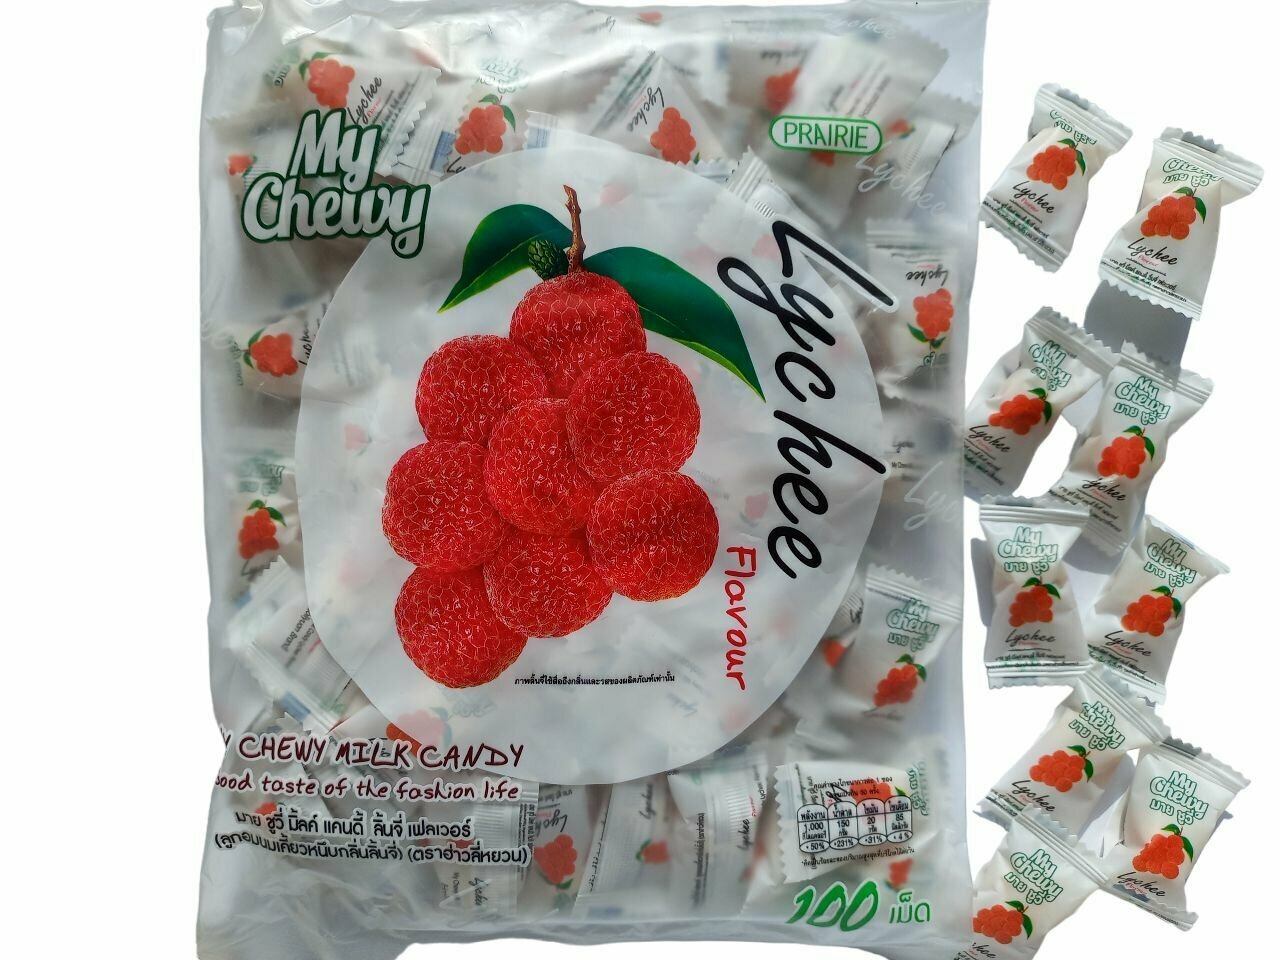 Жевательные молочные конфеты из Тайланда со вкусом Личи / Тайские сладости My Chewy Milk Candy Lychee Flavour 360 g.- 100 шт.